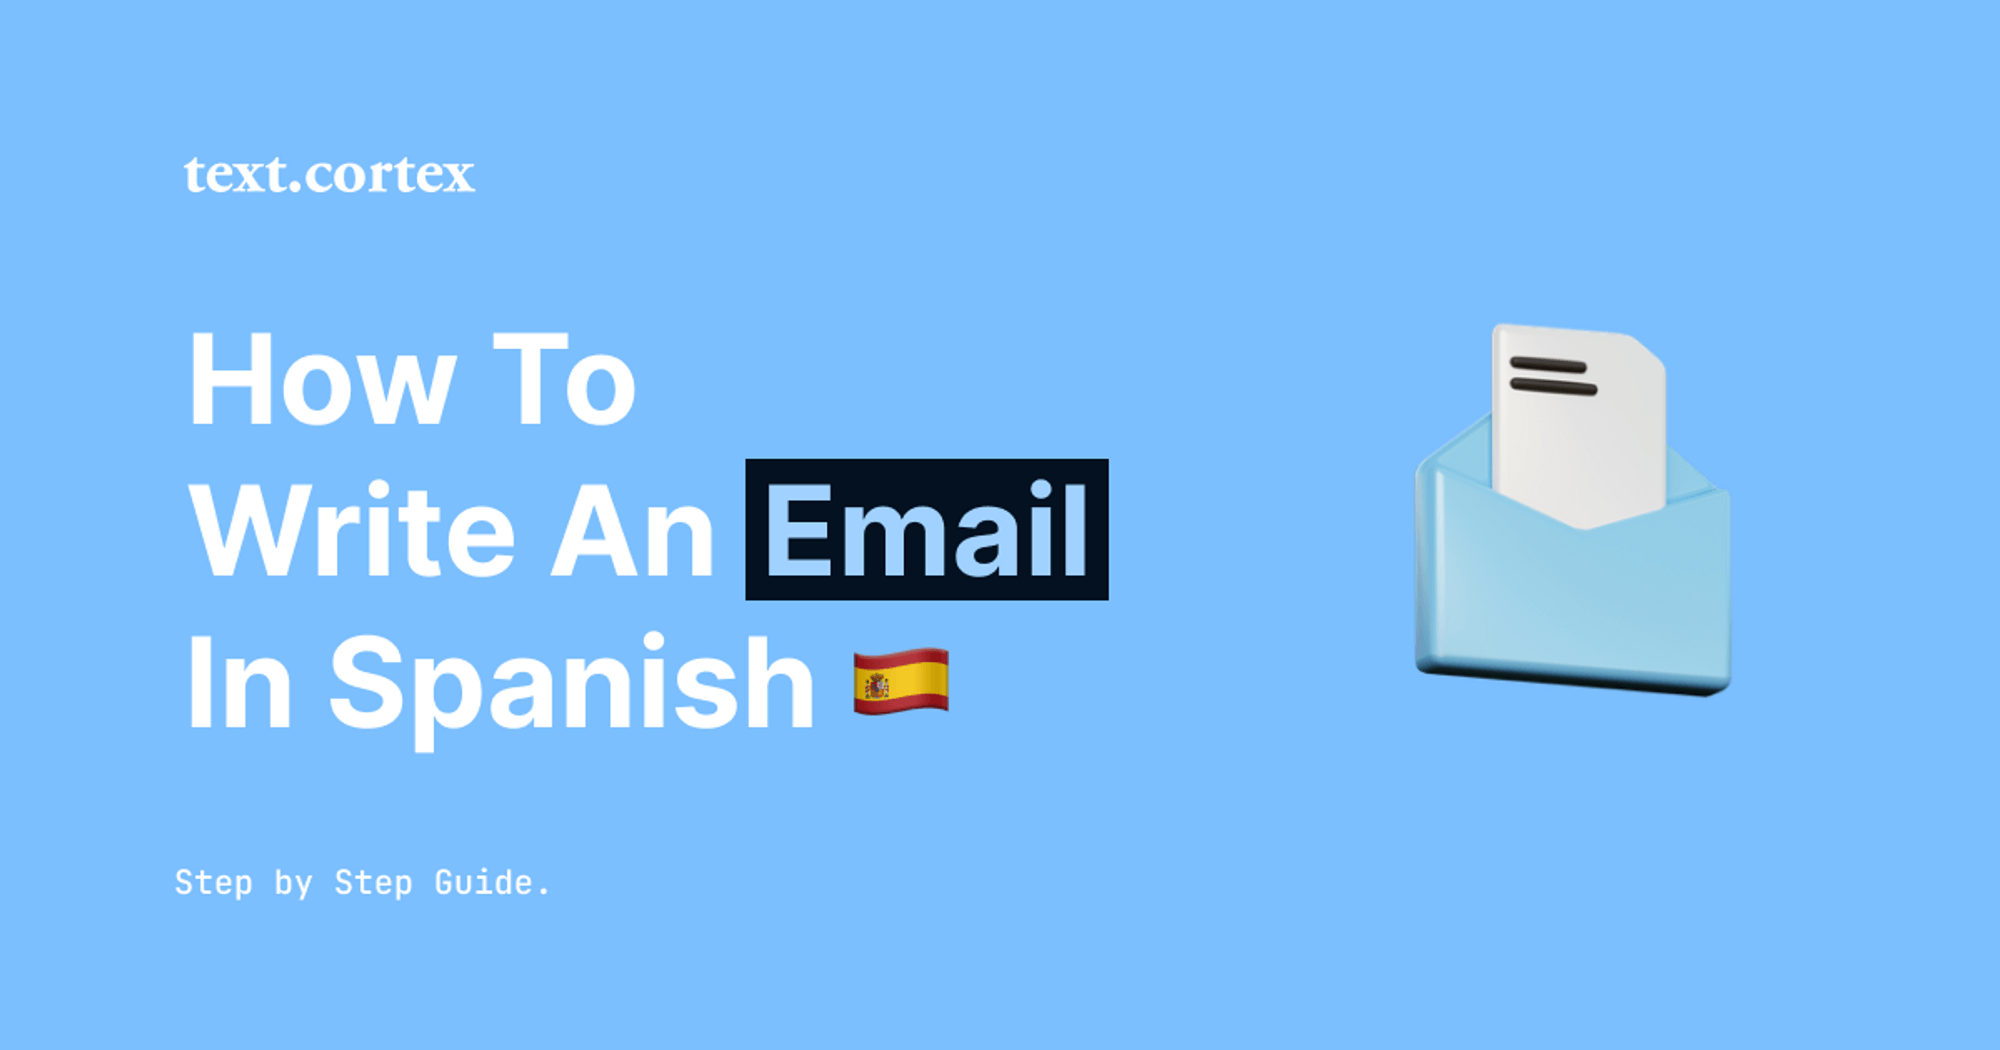 Een e-mail schrijven in het Spaans - stap-voor-stap handleiding